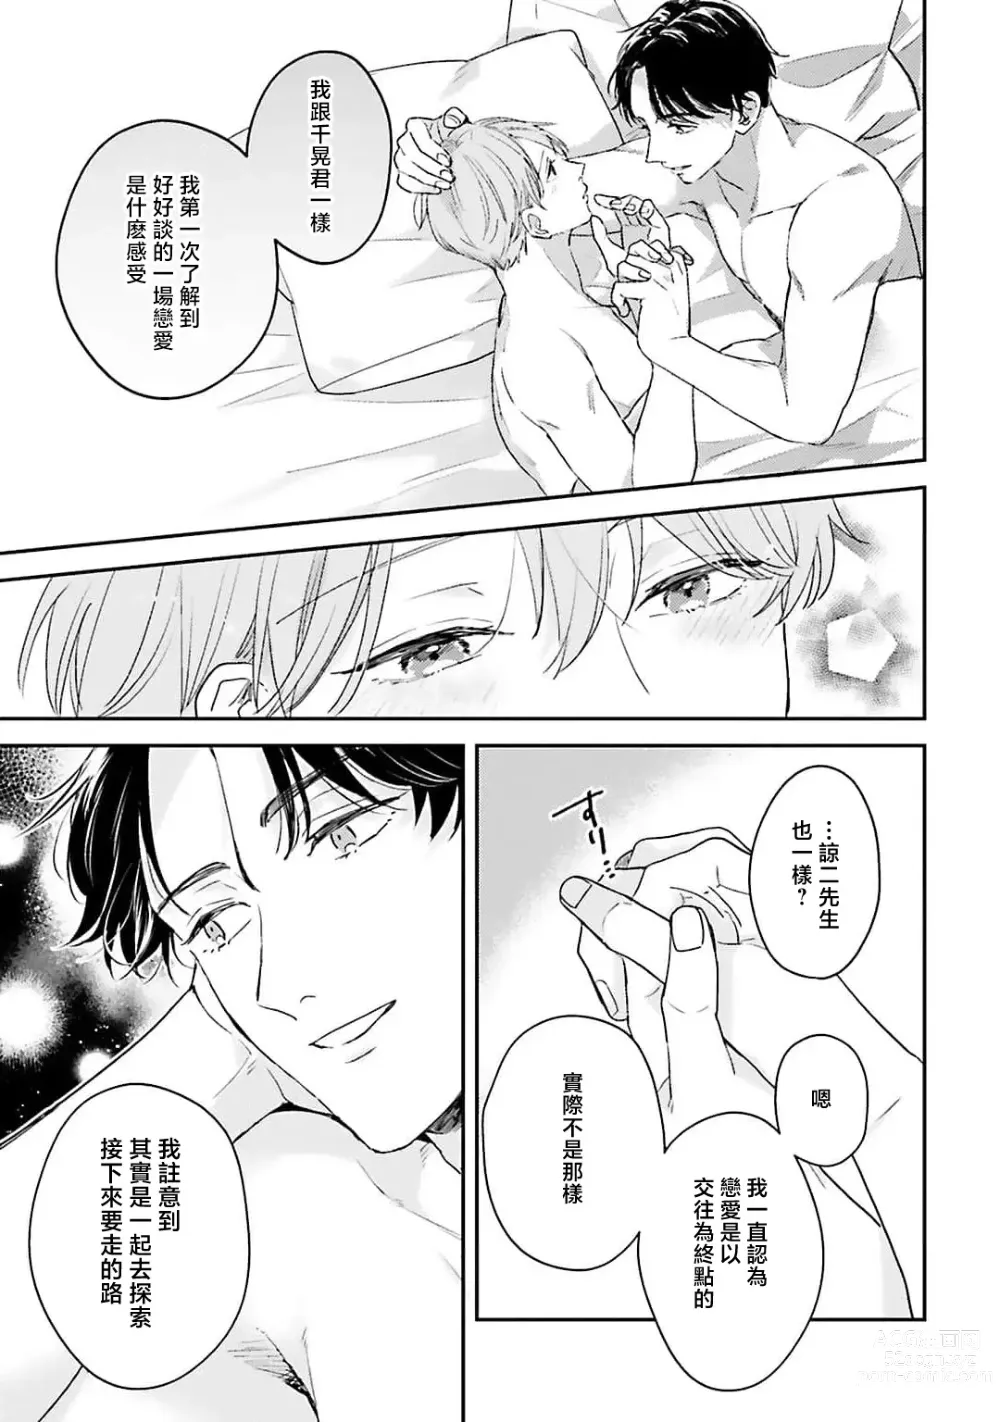 Page 163 of manga 绽放的恋爱皆为醉与甜1-5